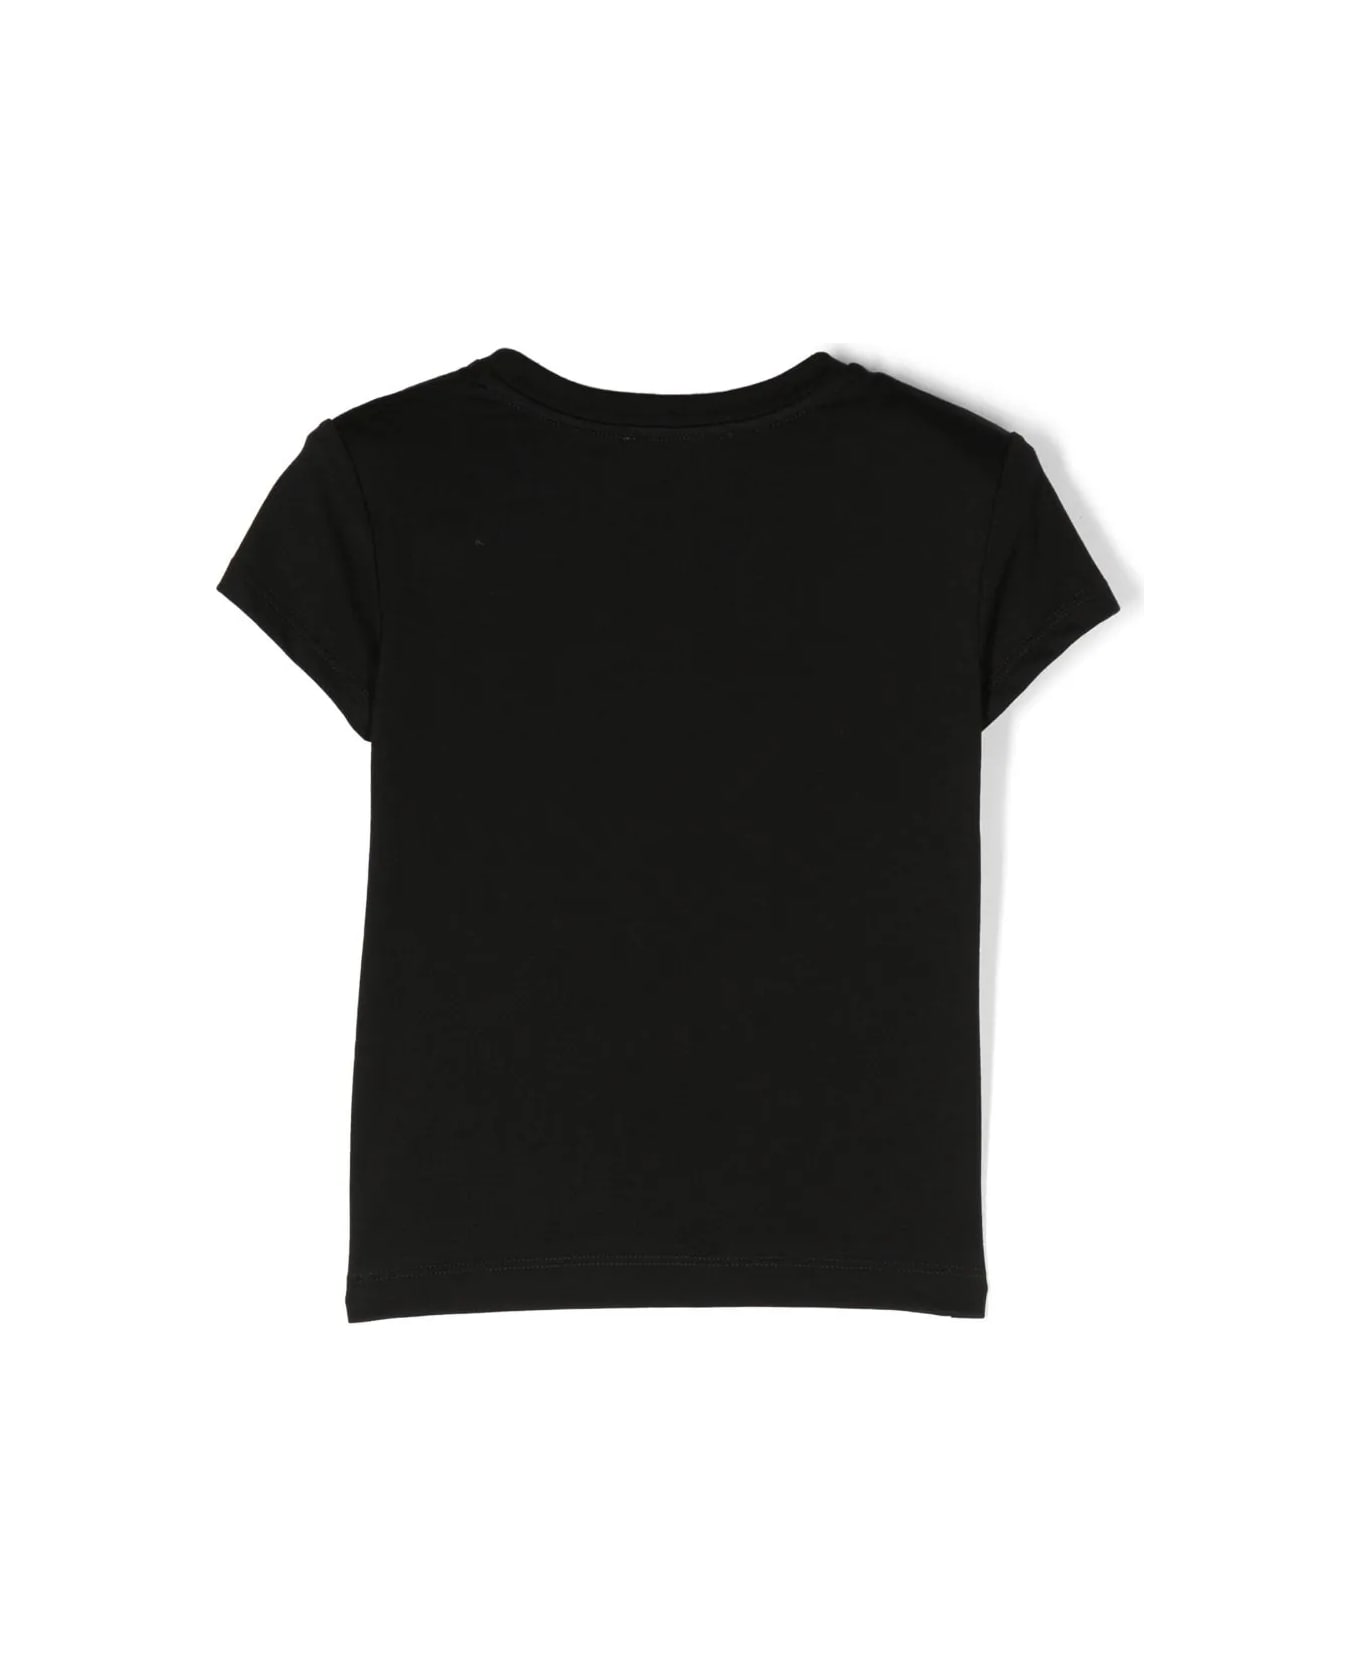 Balmain Logo T-shirt - Black